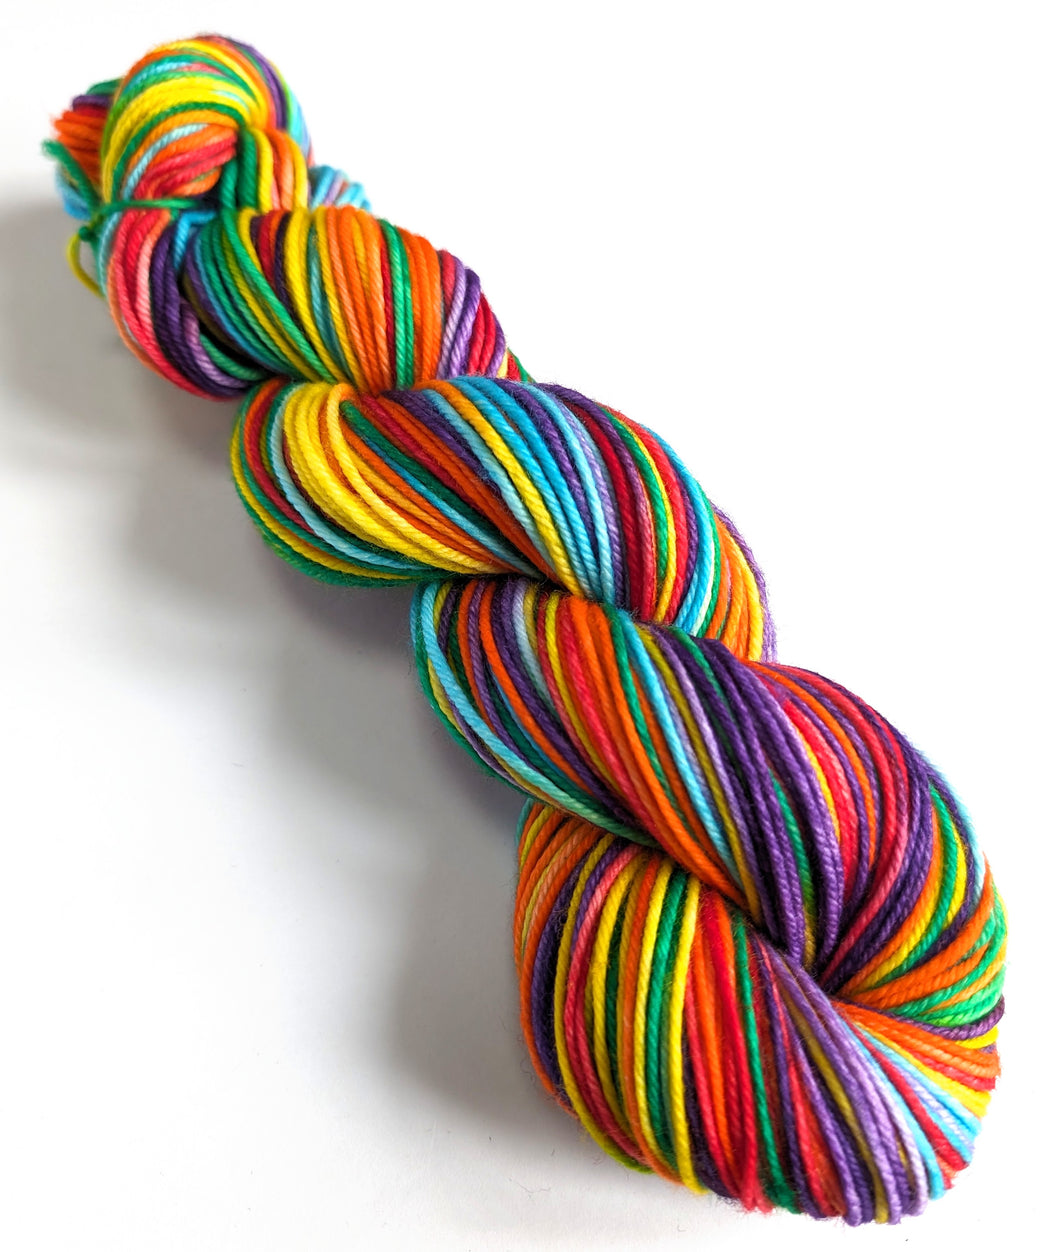 Rainbow on superwash merino/cashmere/nylon DK yarn.